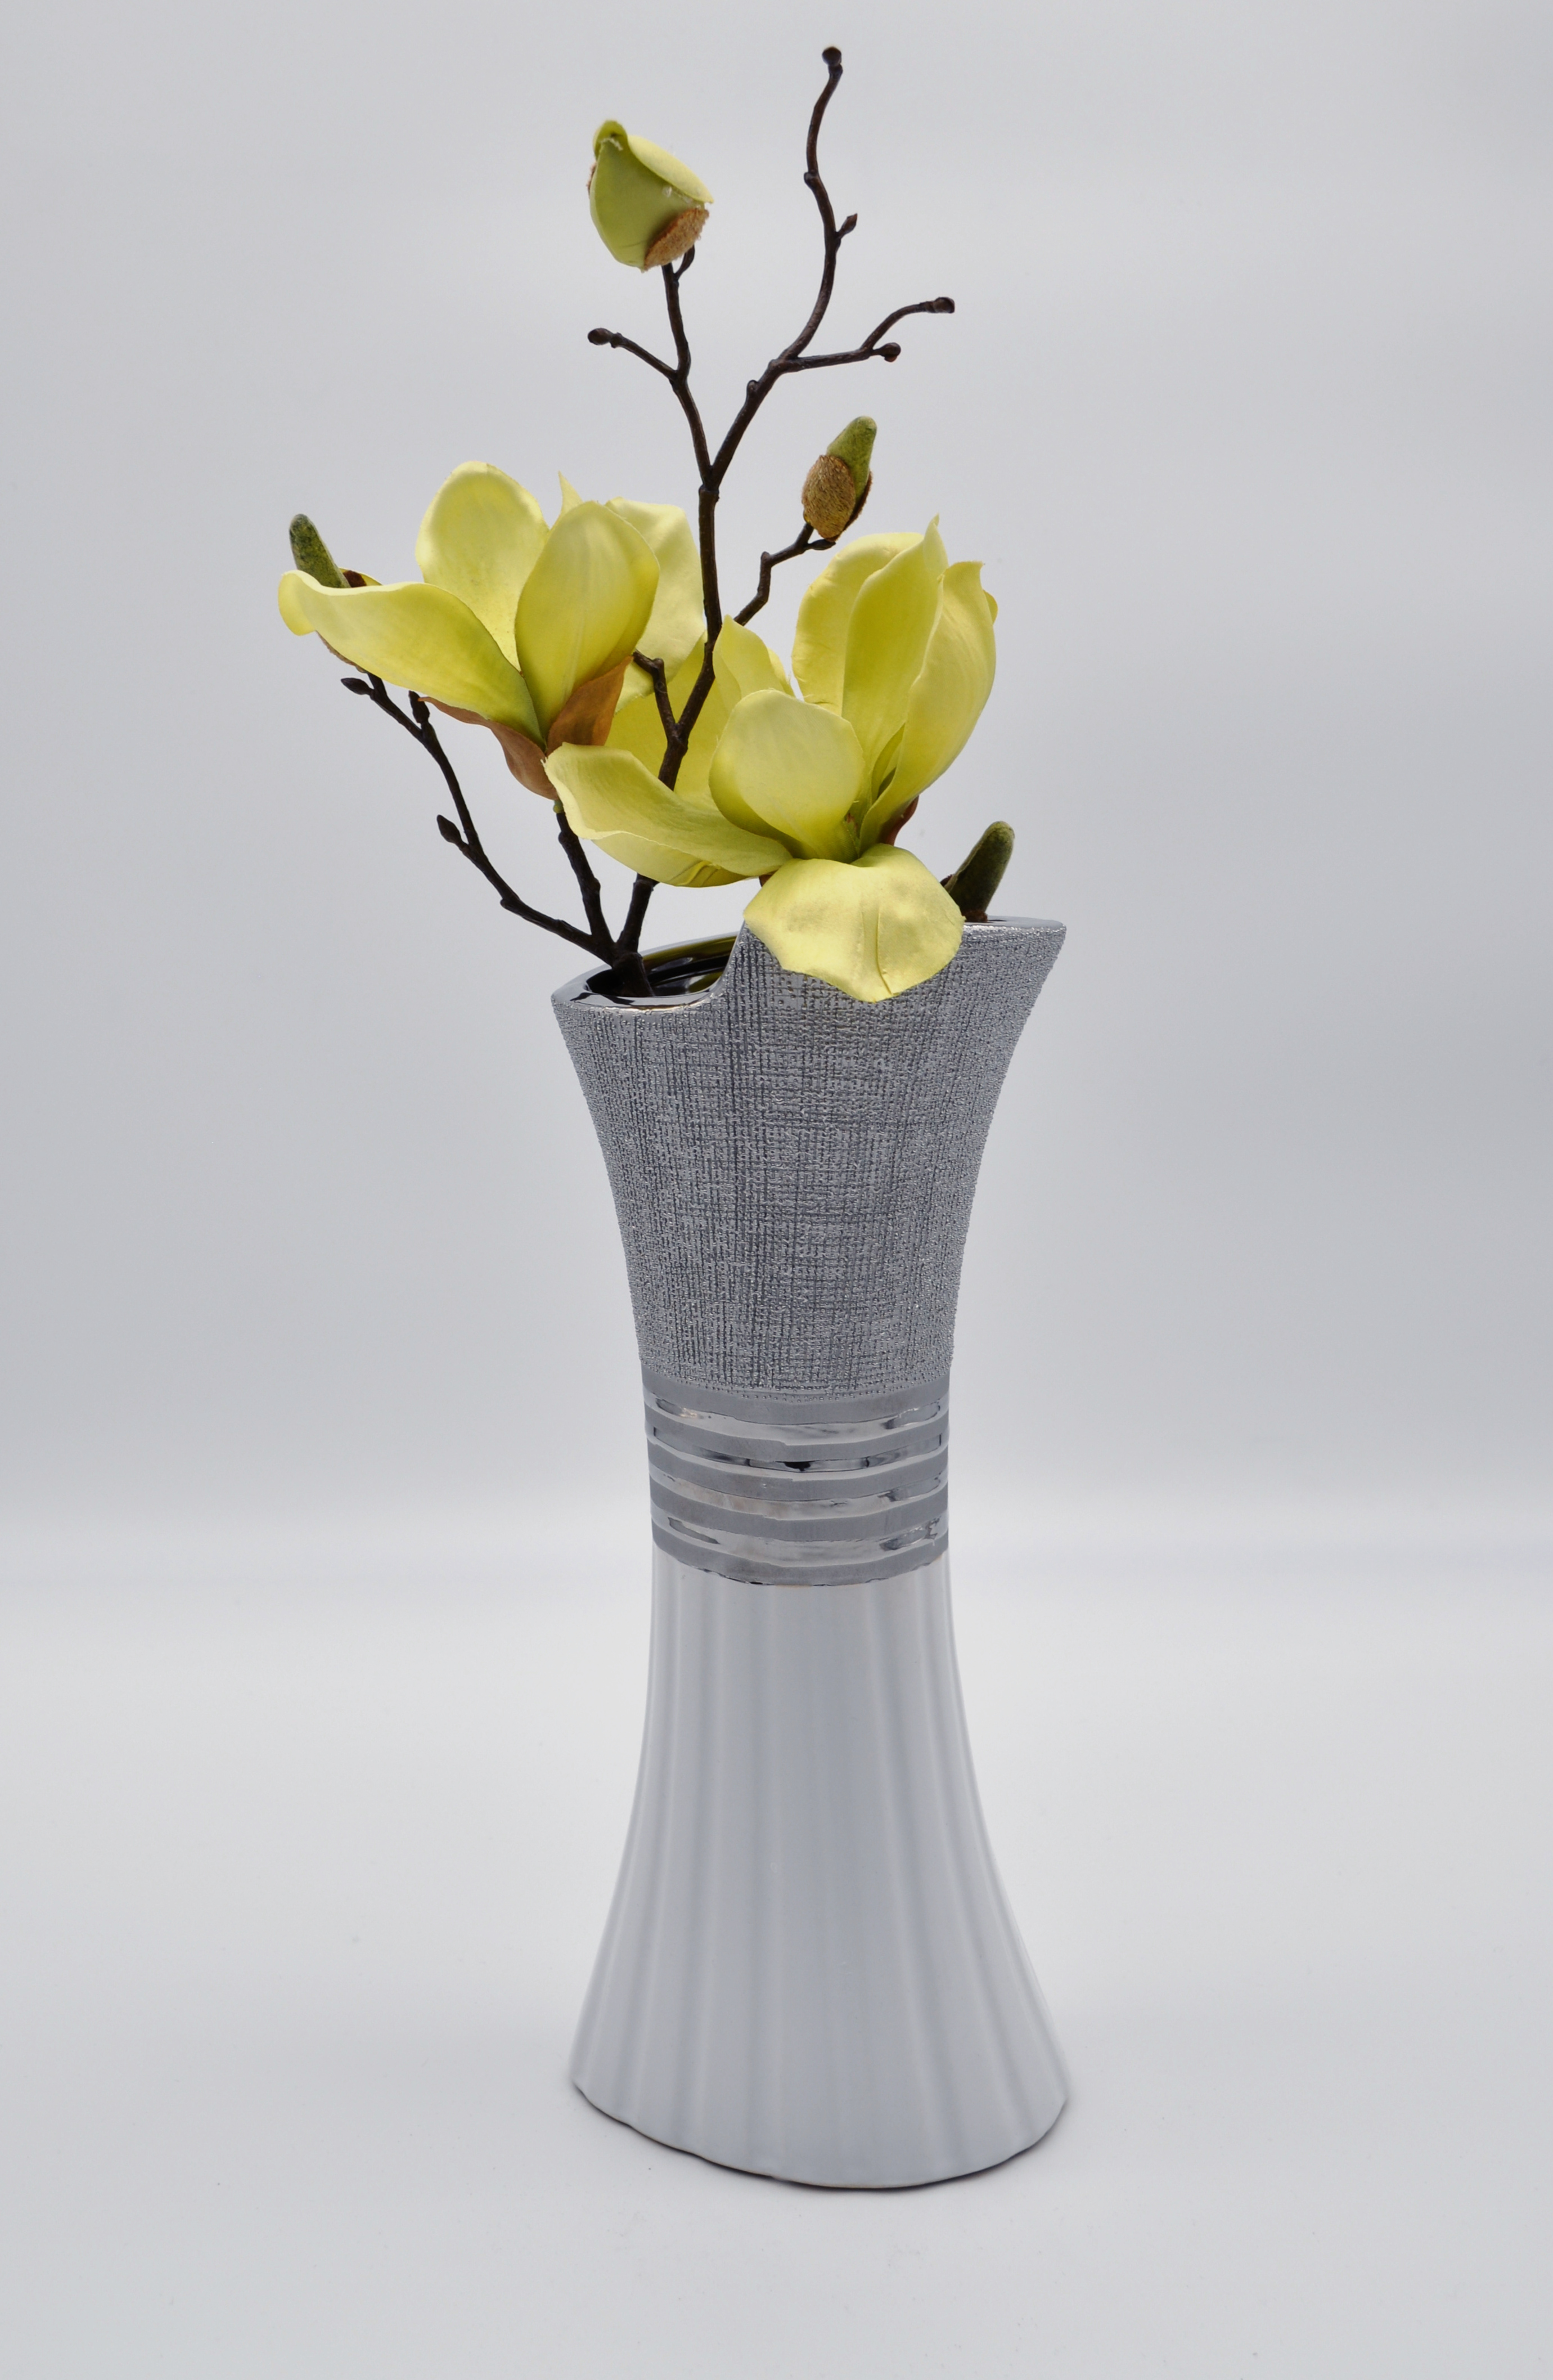 Dekovase Vase Blumenvase 30 cm Hoch Deko Modern Design Keramik weiß grau LN39-11 